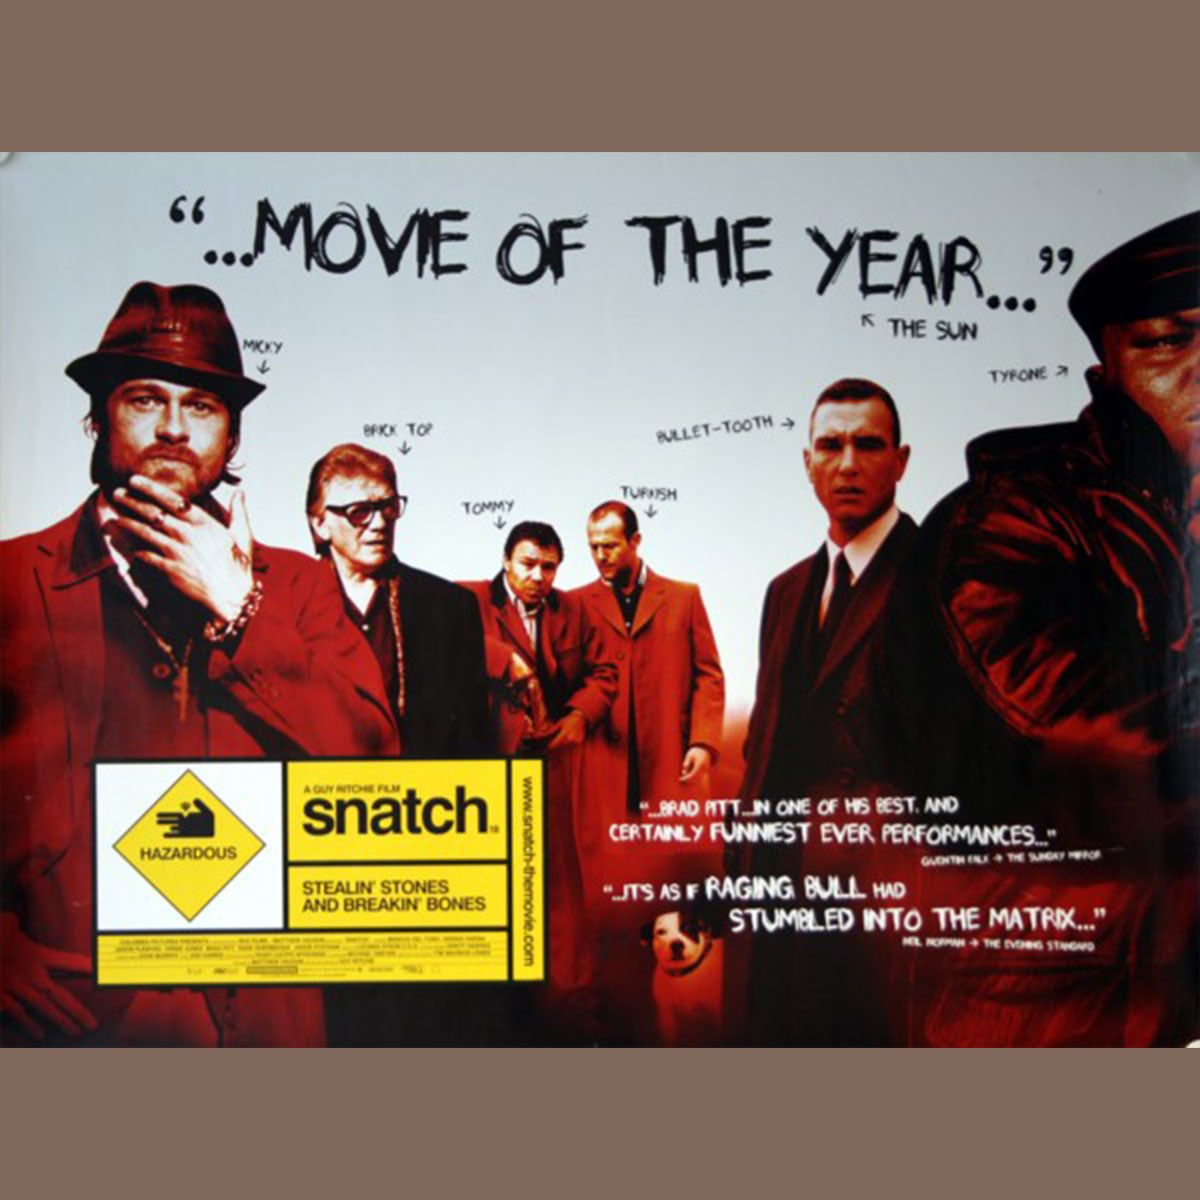 Snatch (2000)